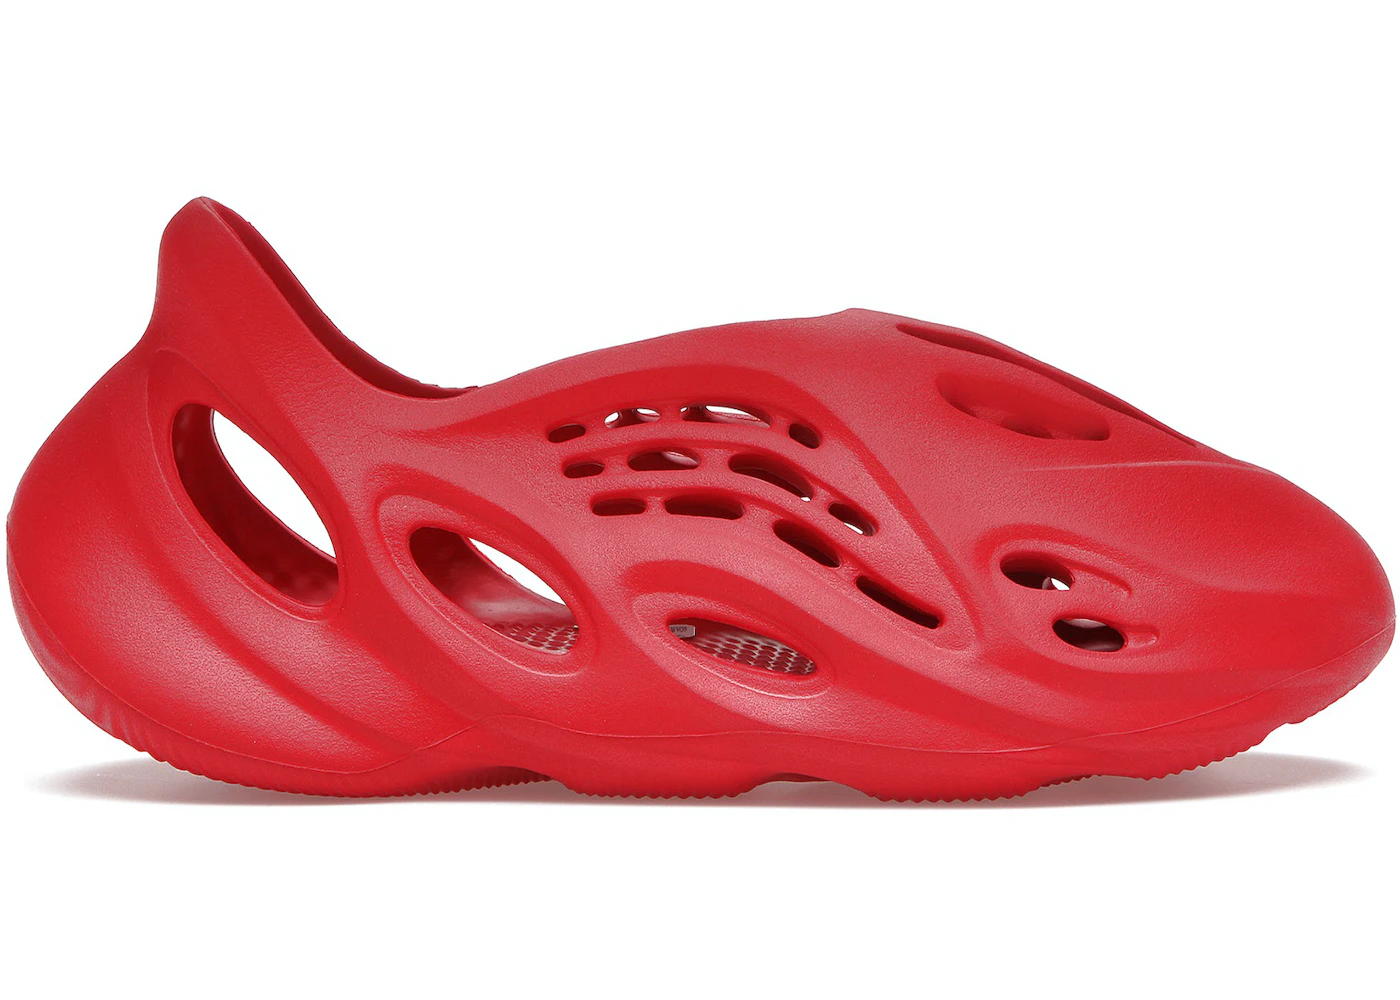 adidas Yeezy vermilion foam runner Foam RNNR Vermillion - GW3355 - US